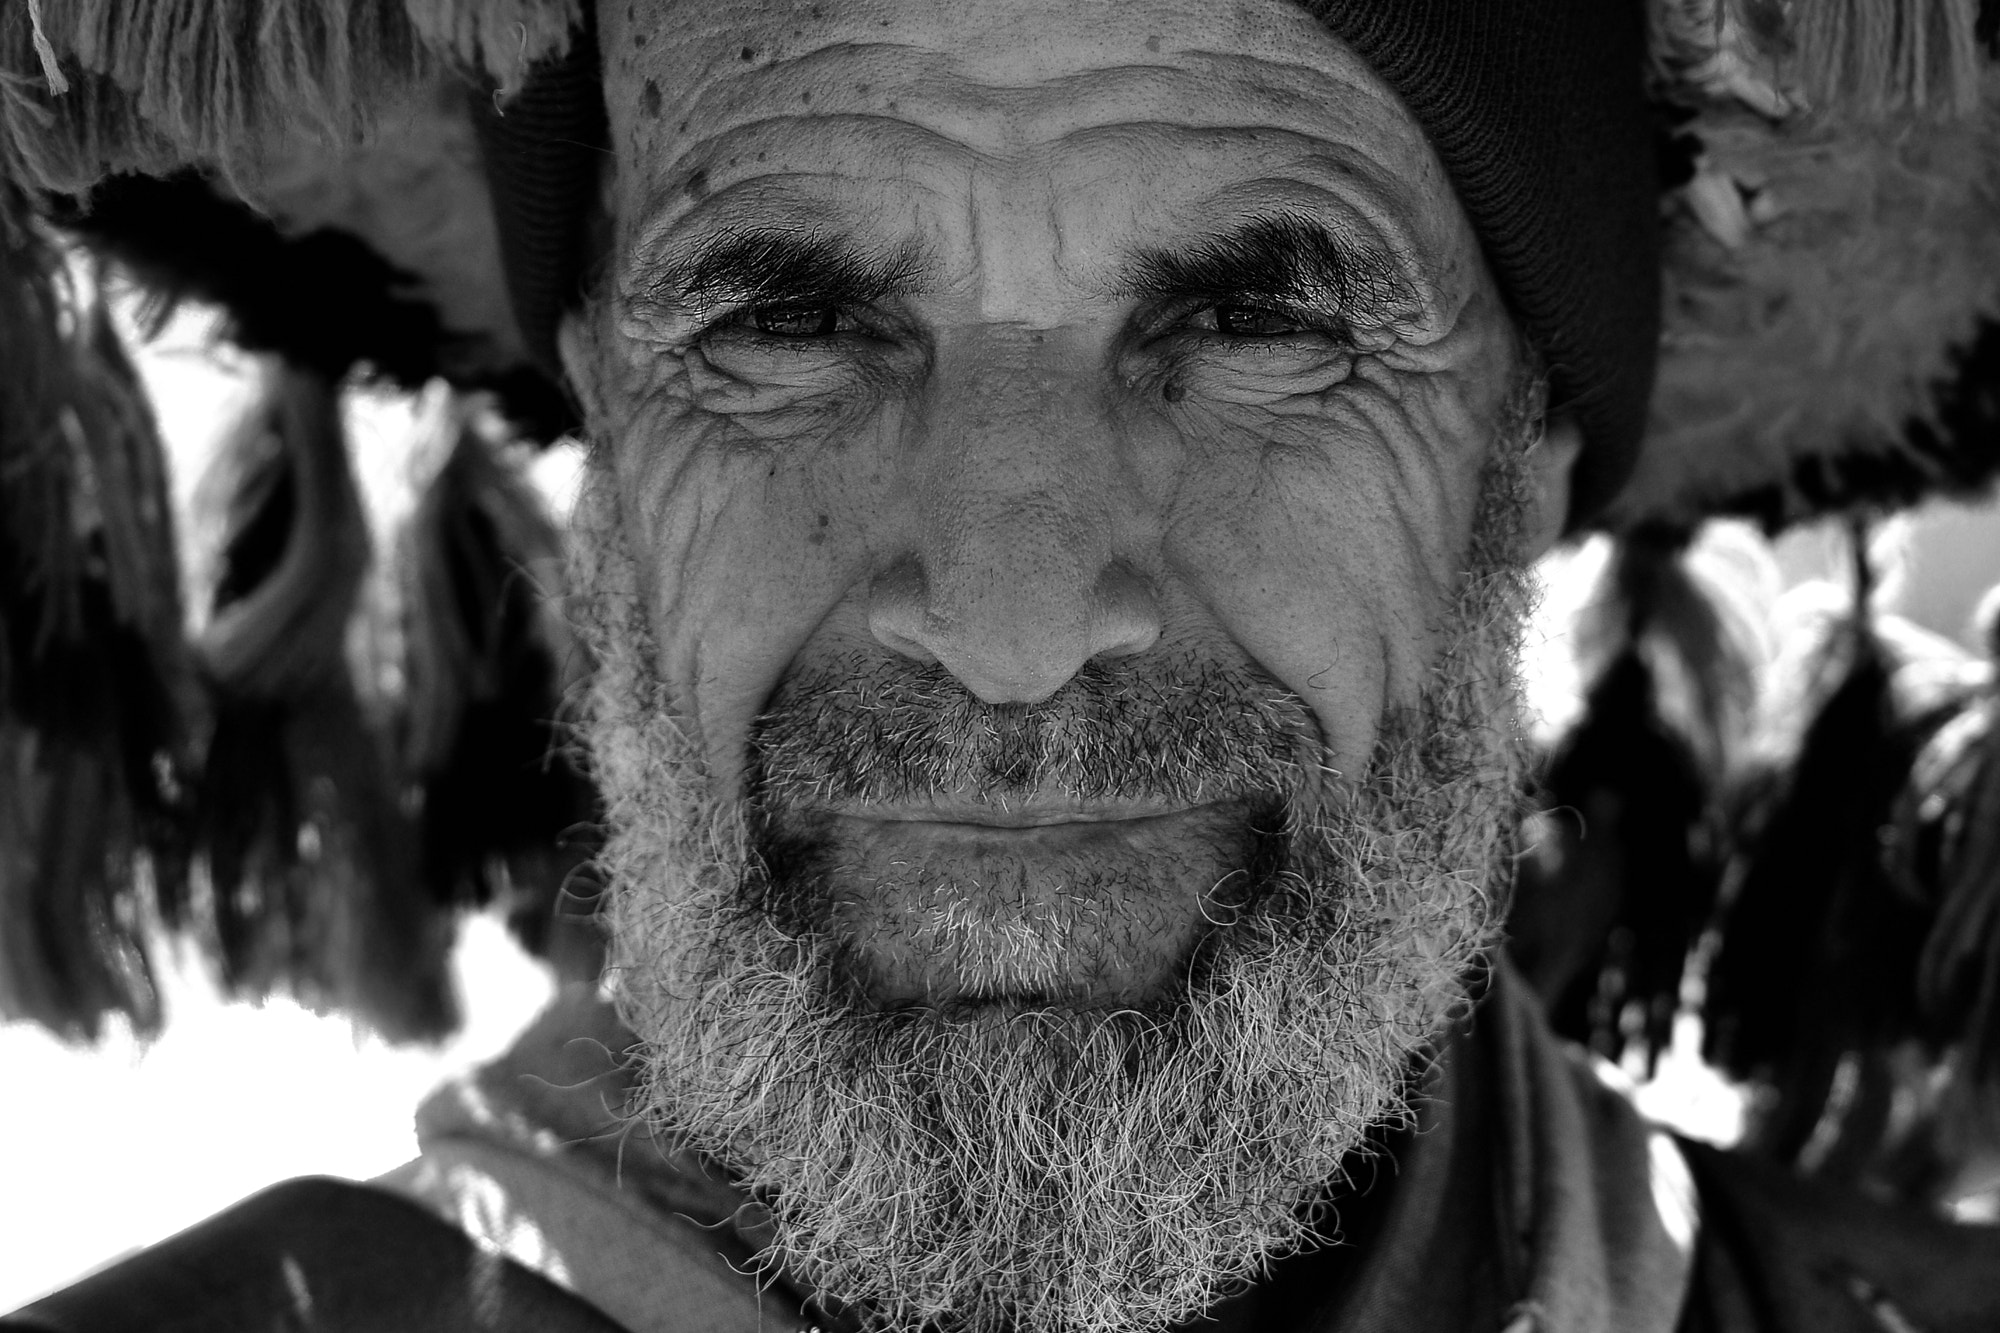 Nikon D90 sample photo. Faces of morocco photography